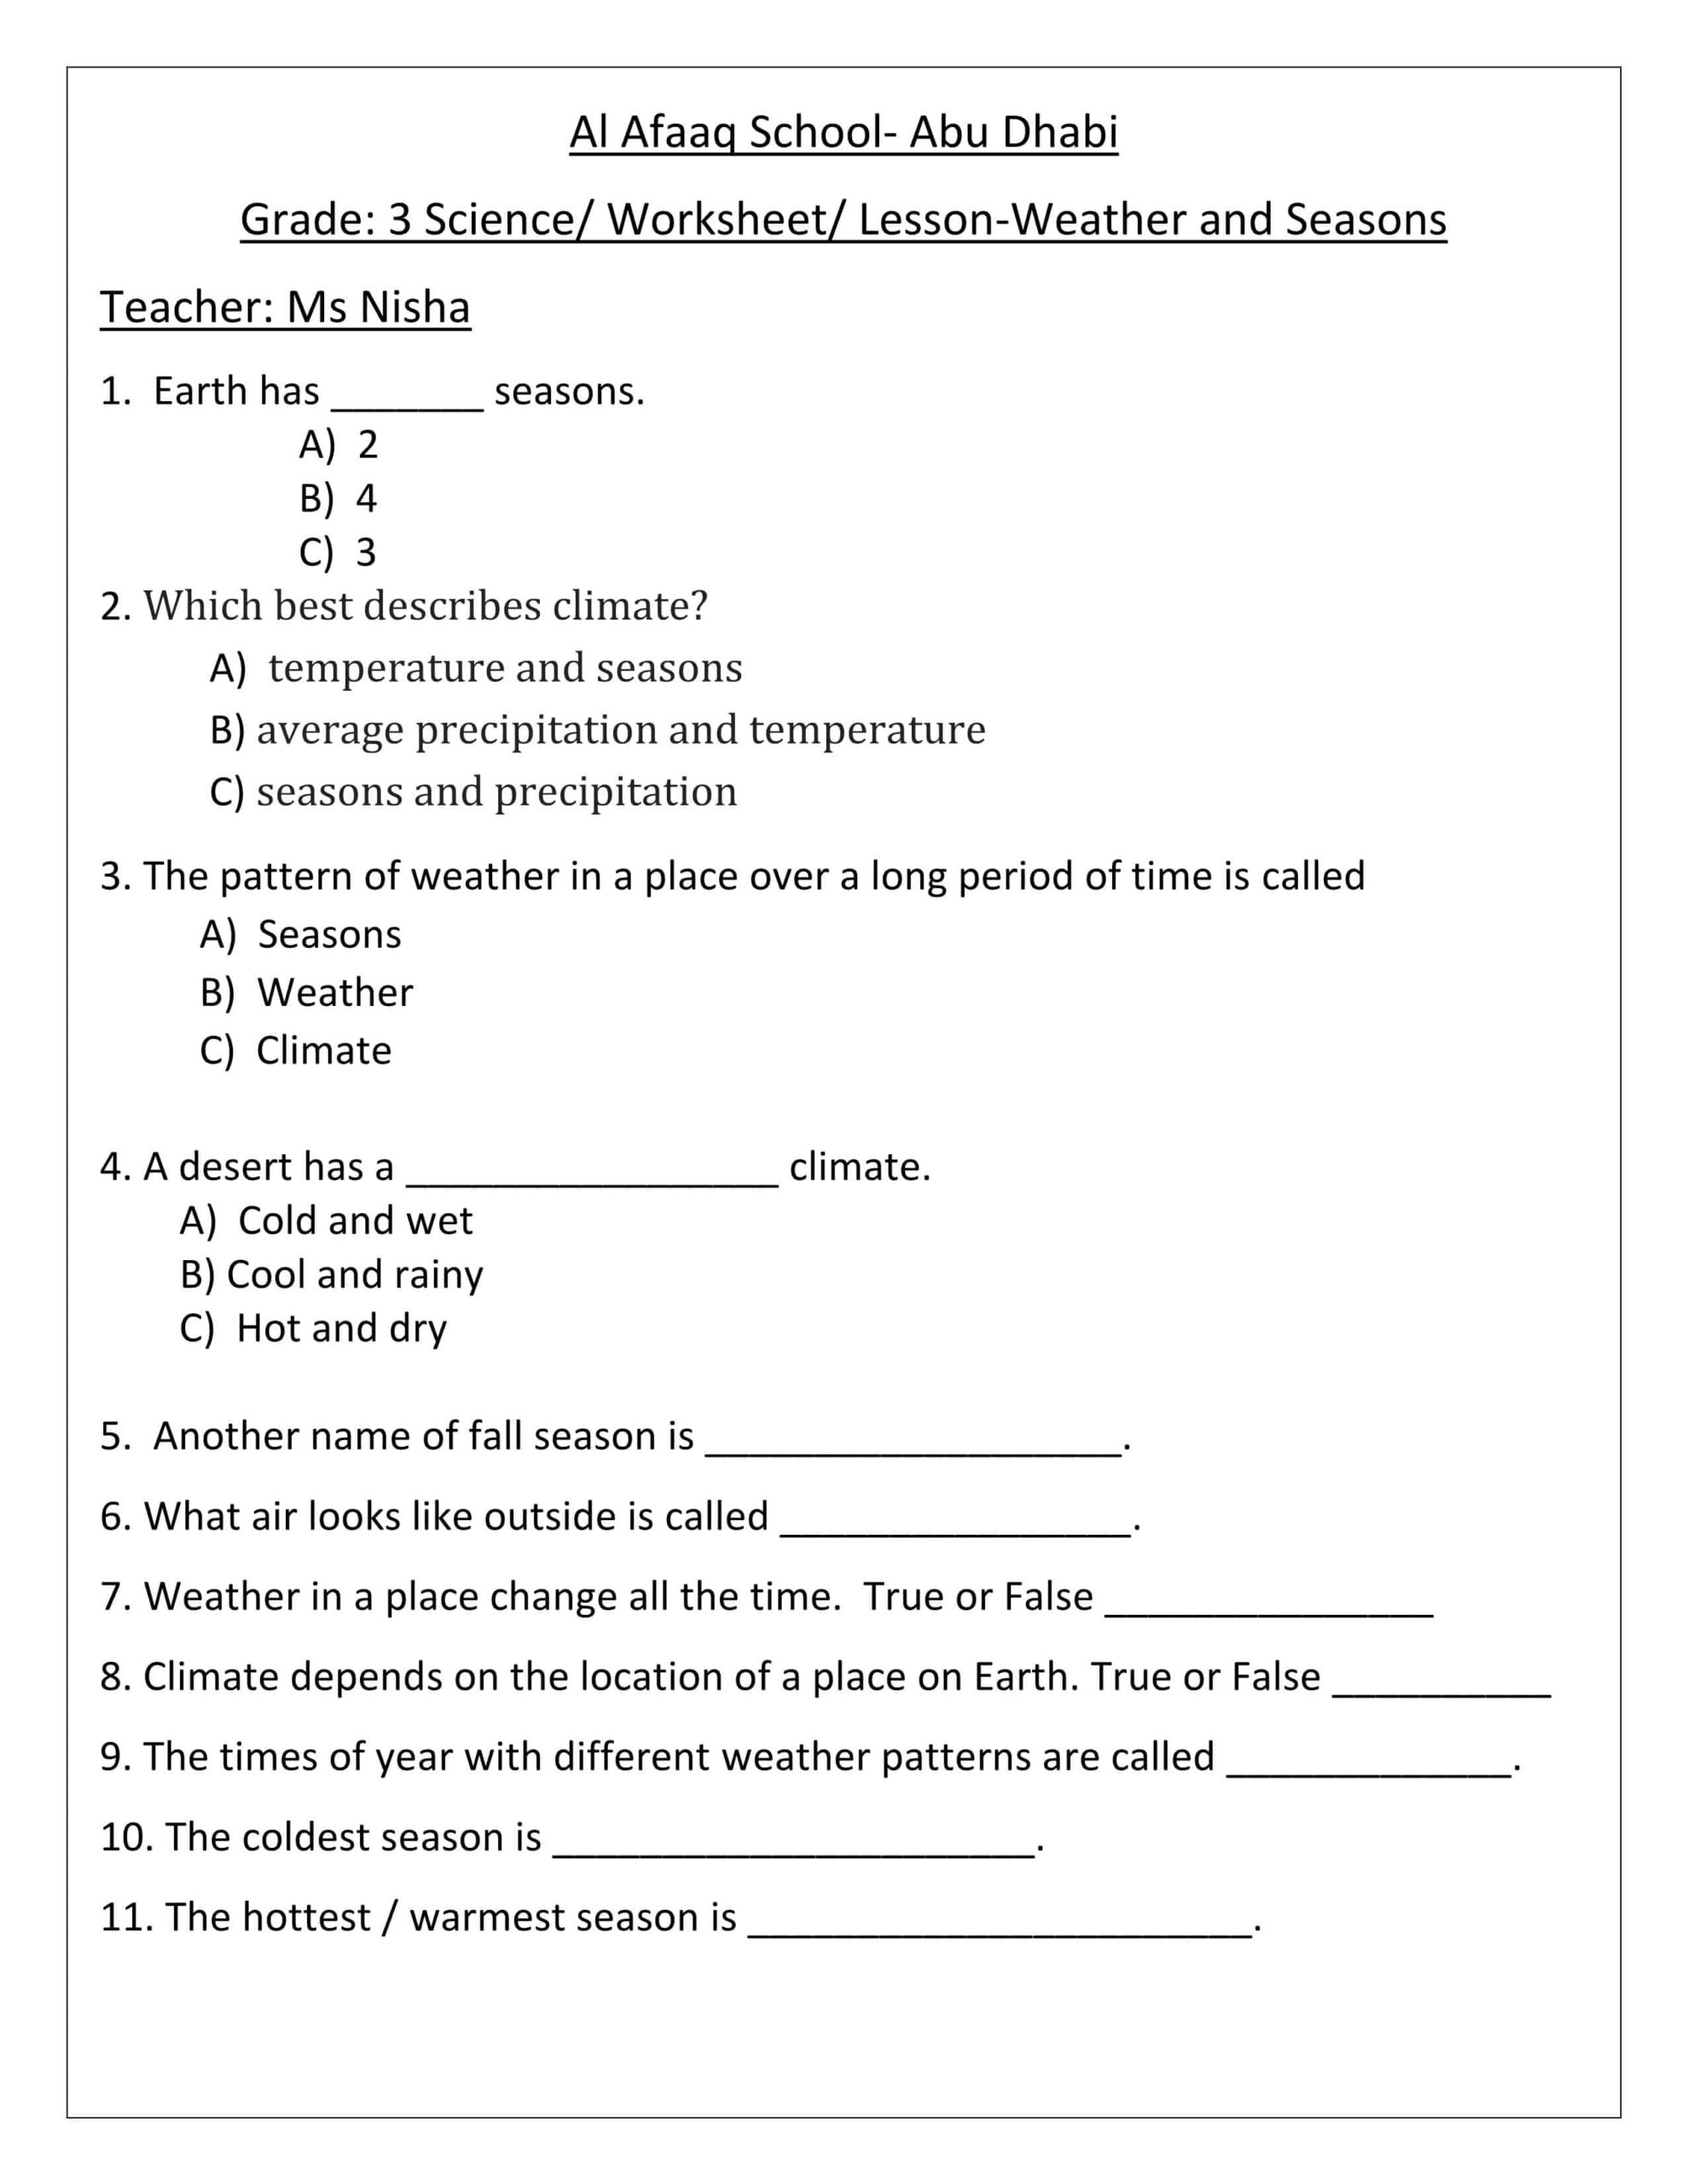 حل أوراق عمل Weather and Seasons العلوم المتكاملة الصف الثالث